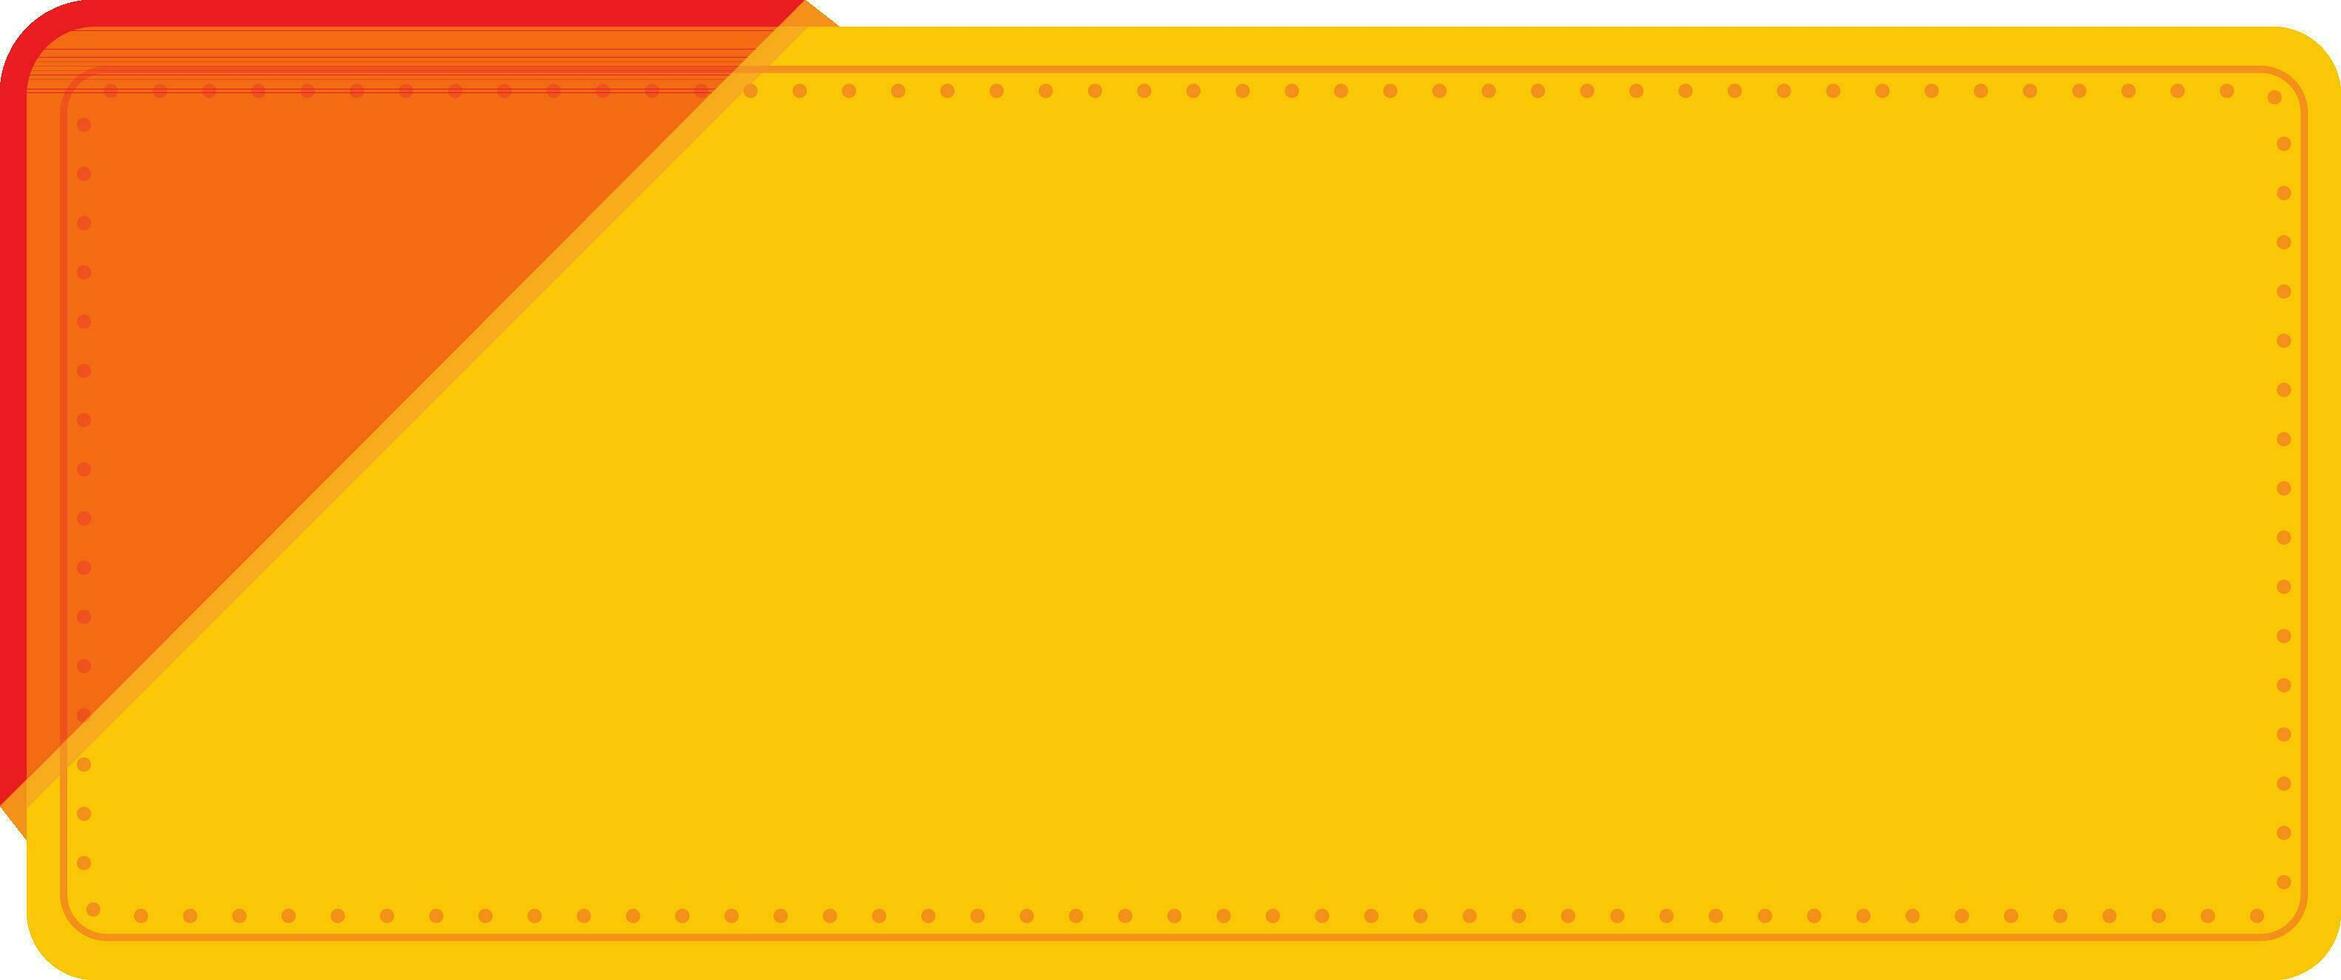 vuoto carta rettangolo etichetta o etichetta elemento nel cromo giallo e rosso colore. vettore